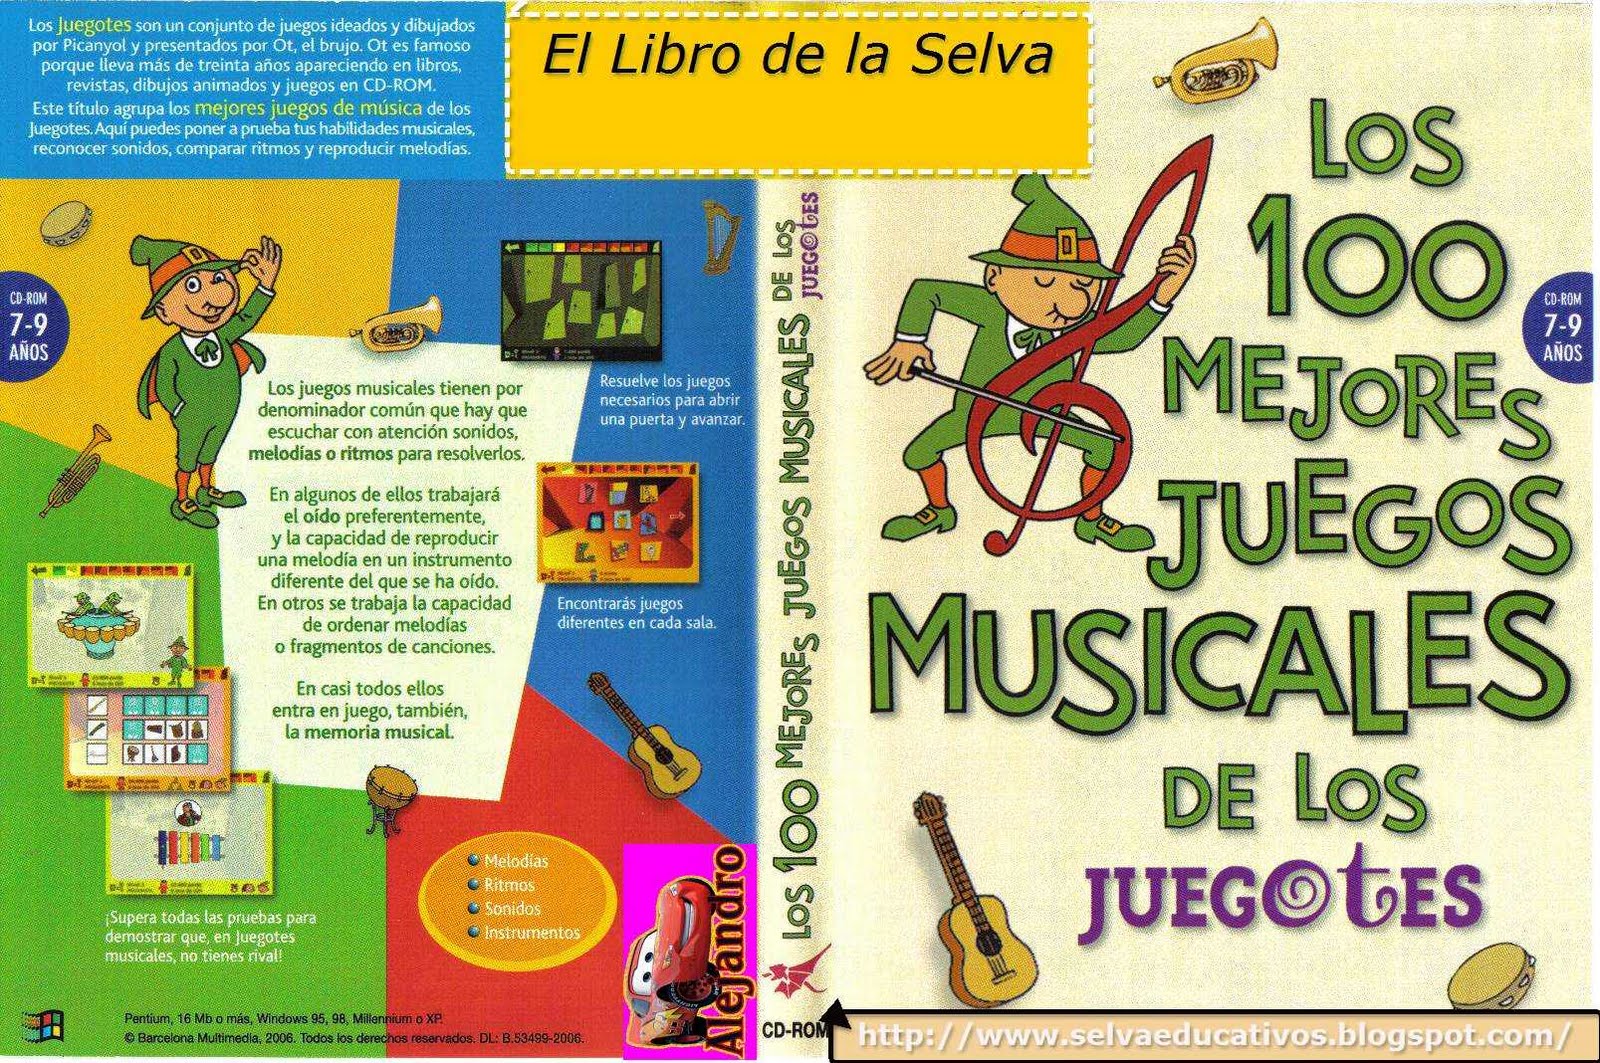 los100mejorejuegosmusicales - Los 100 Mejore Juegos Musicales de los Juegotes. [PC CD] Español 7-9 Años.[UL]